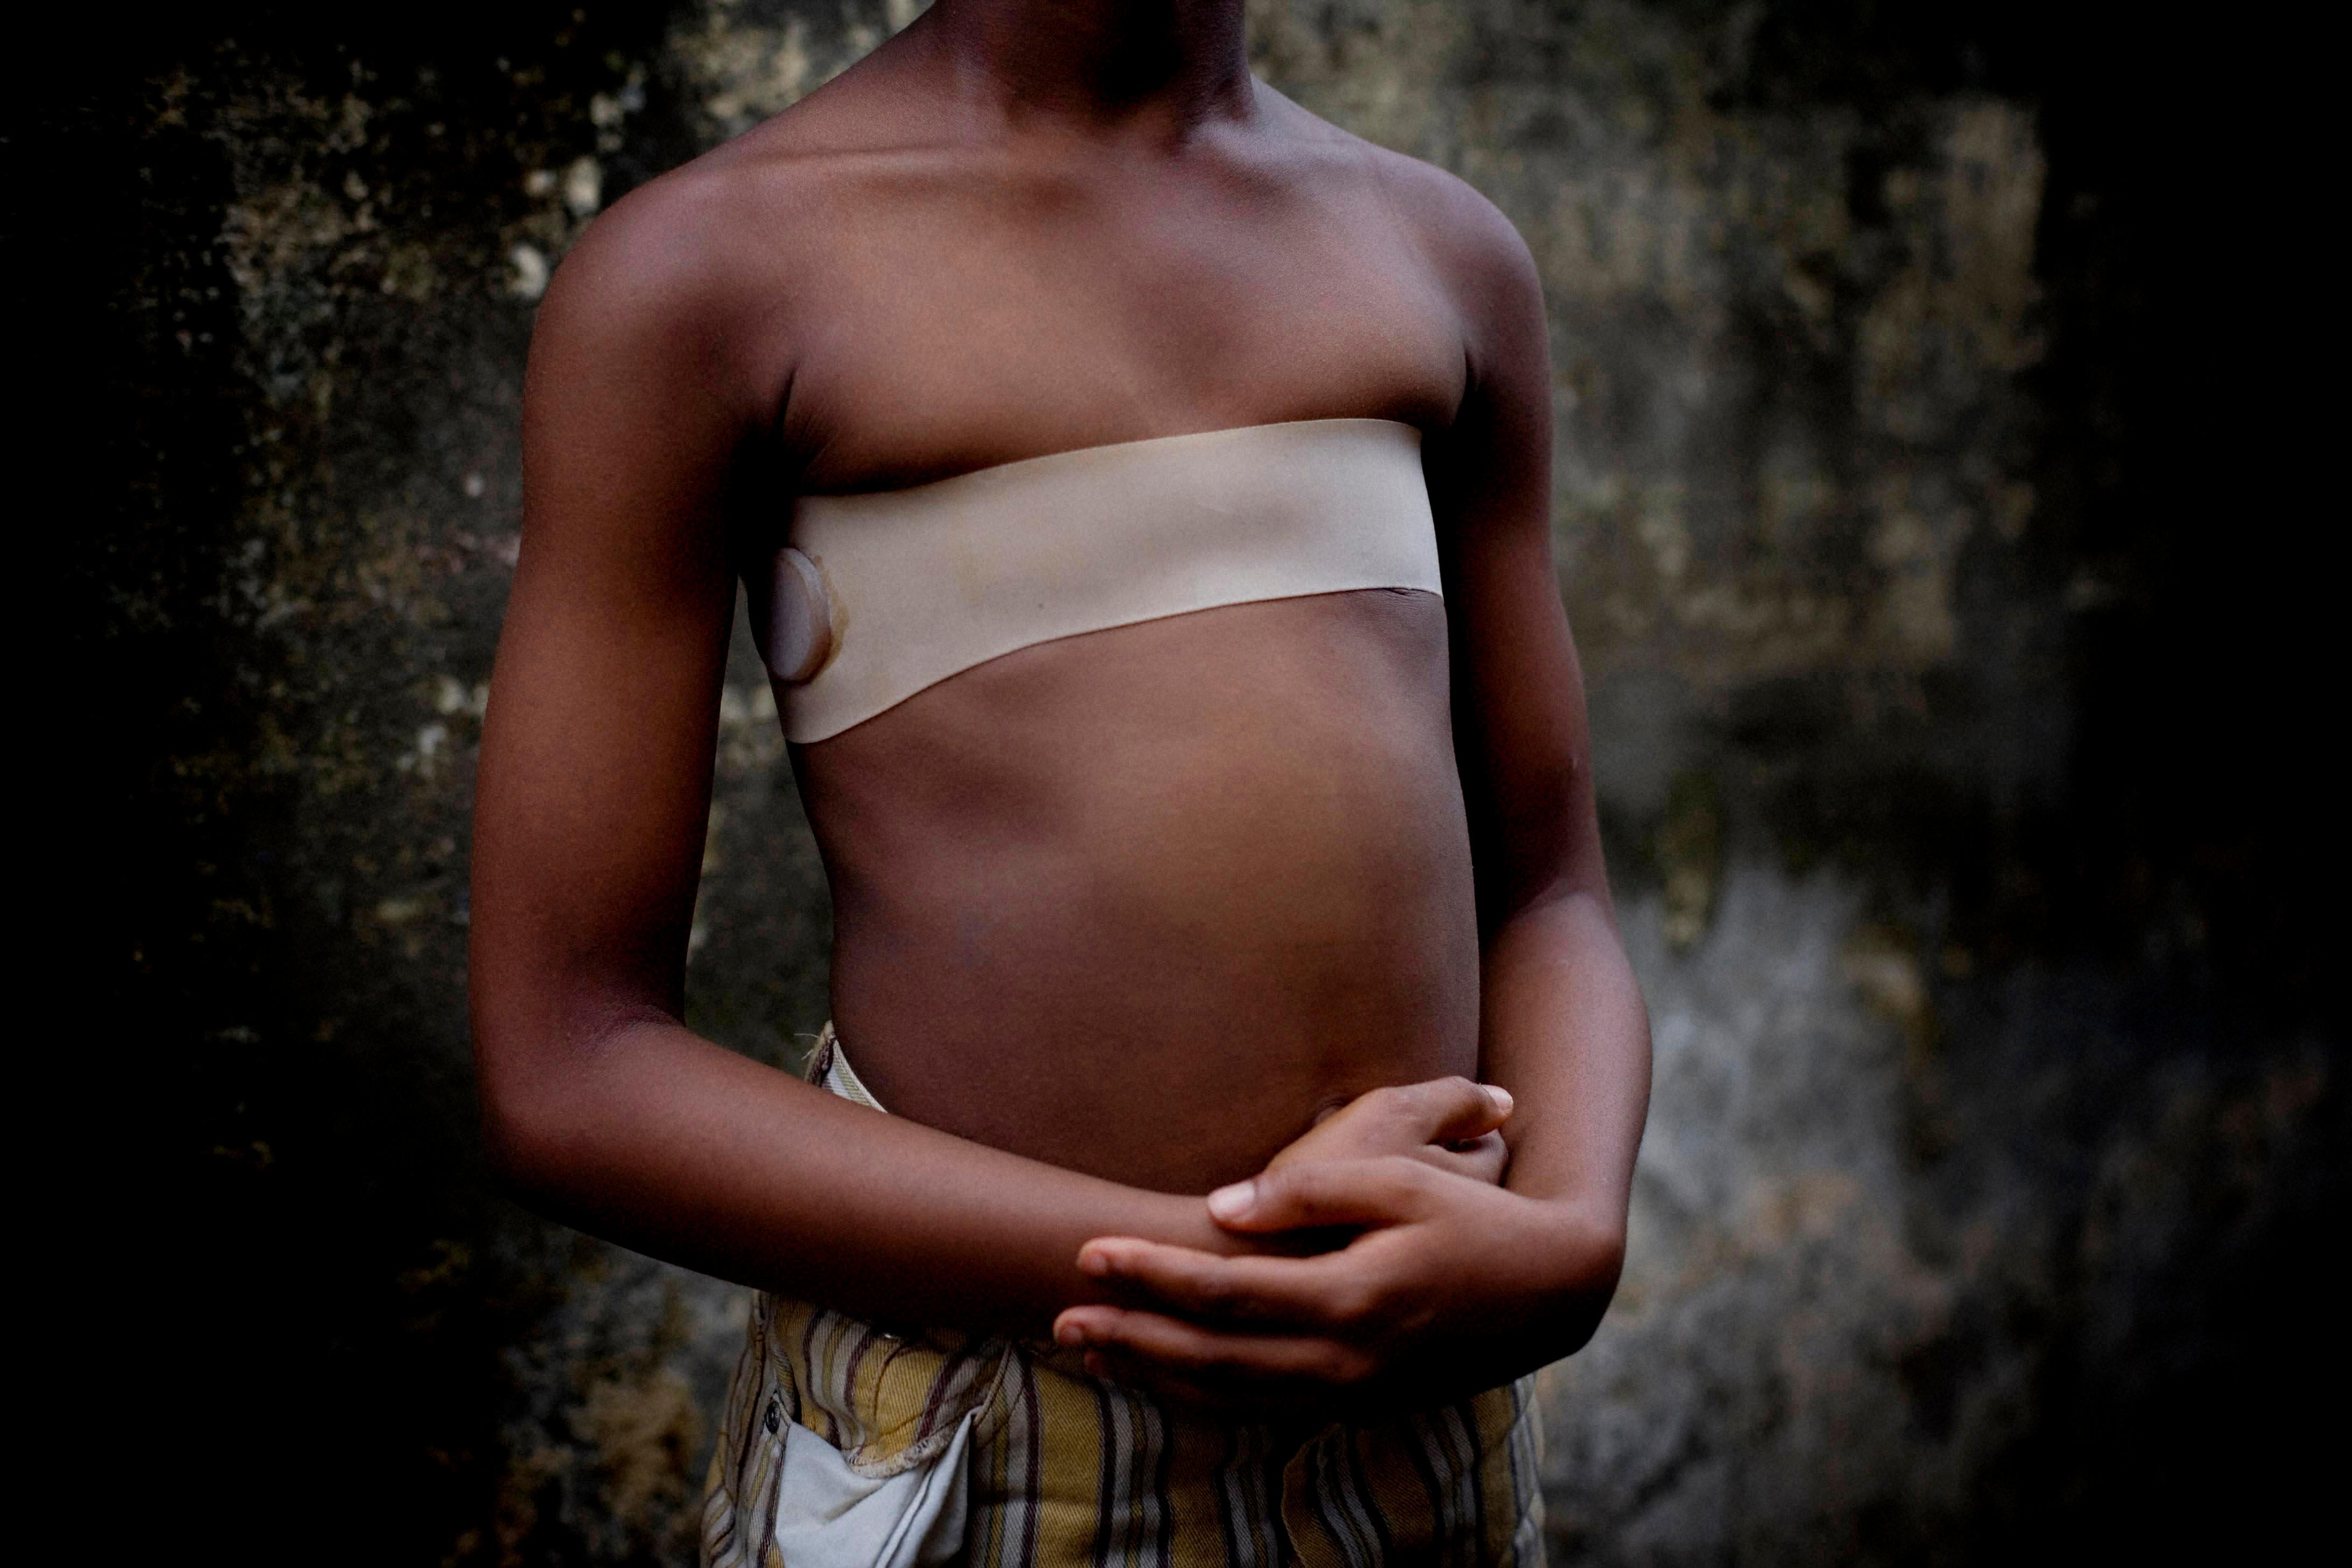 Σιδέρωμα στήθους: Μια φρικτή και απάνθρωπη πρακτική για μικρά κορίτσια